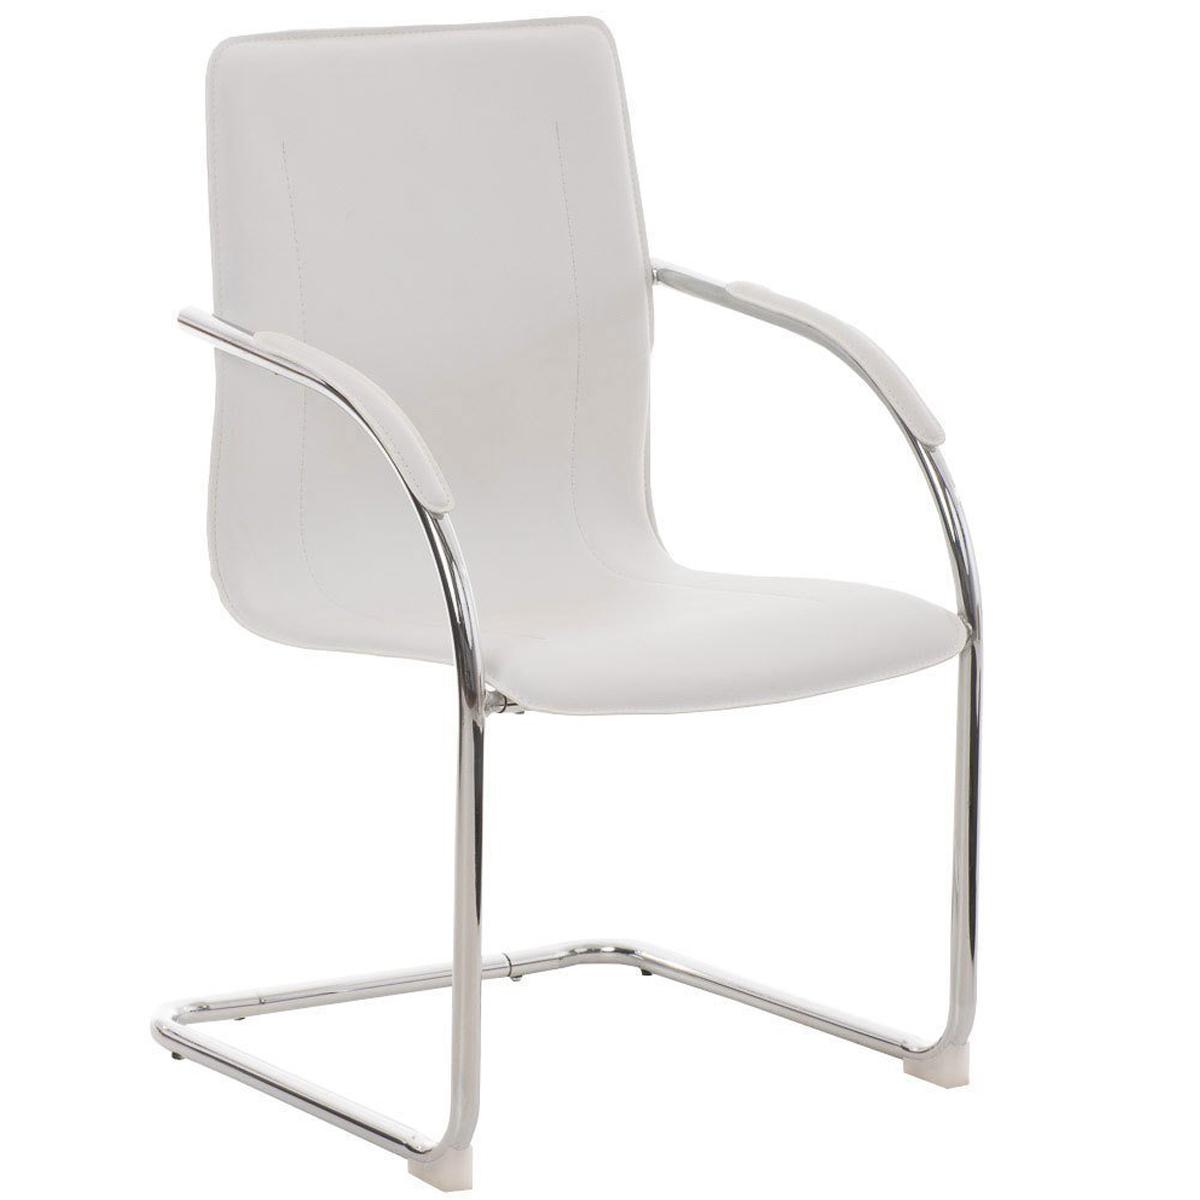 Cadeira de Visita FLAP, Estrutura Metálica, Design Moderno, Em Pele, Cor Branco